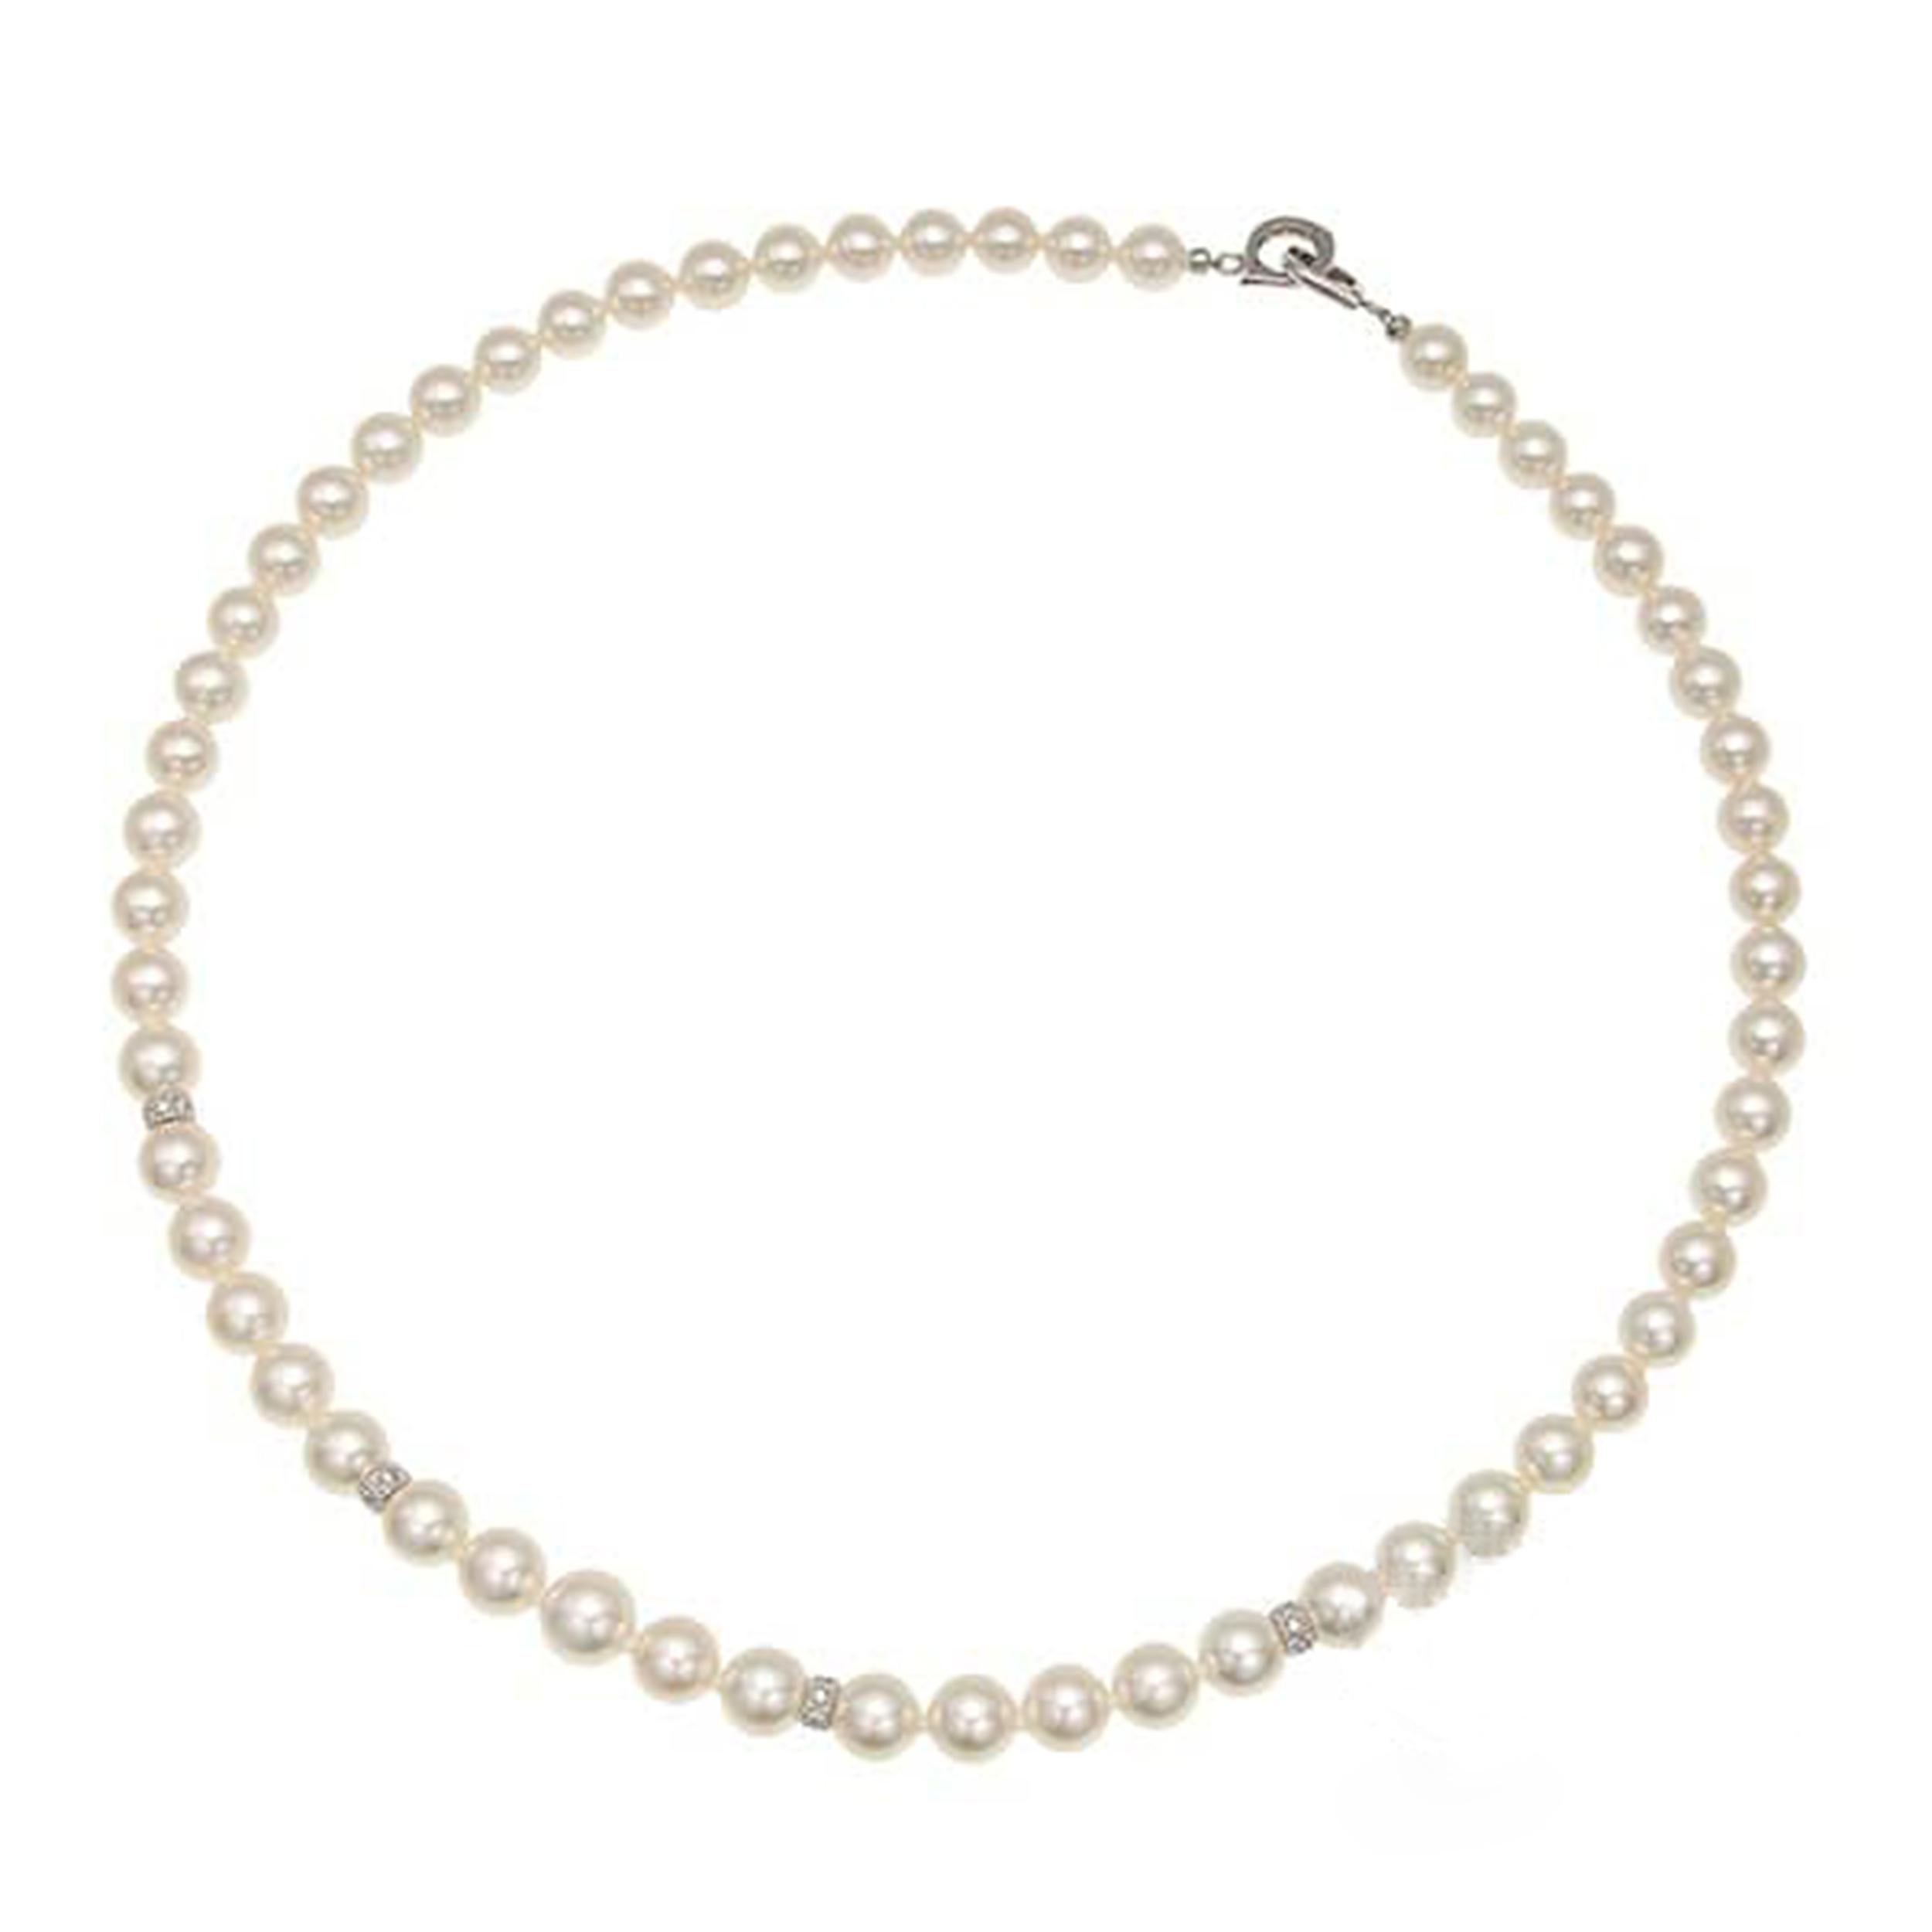 Erhöhen Sie Ihren Stil mit dieser eleganten Perlenkette, einem zeitlosen Stück, das Raffinesse und Anmut ausstrahlt. Diese Halskette aus glänzenden, ca. 6,5 mm großen Perlen ist perfekt, um jedem Outfit einen Hauch von Raffinesse zu verleihen. Die